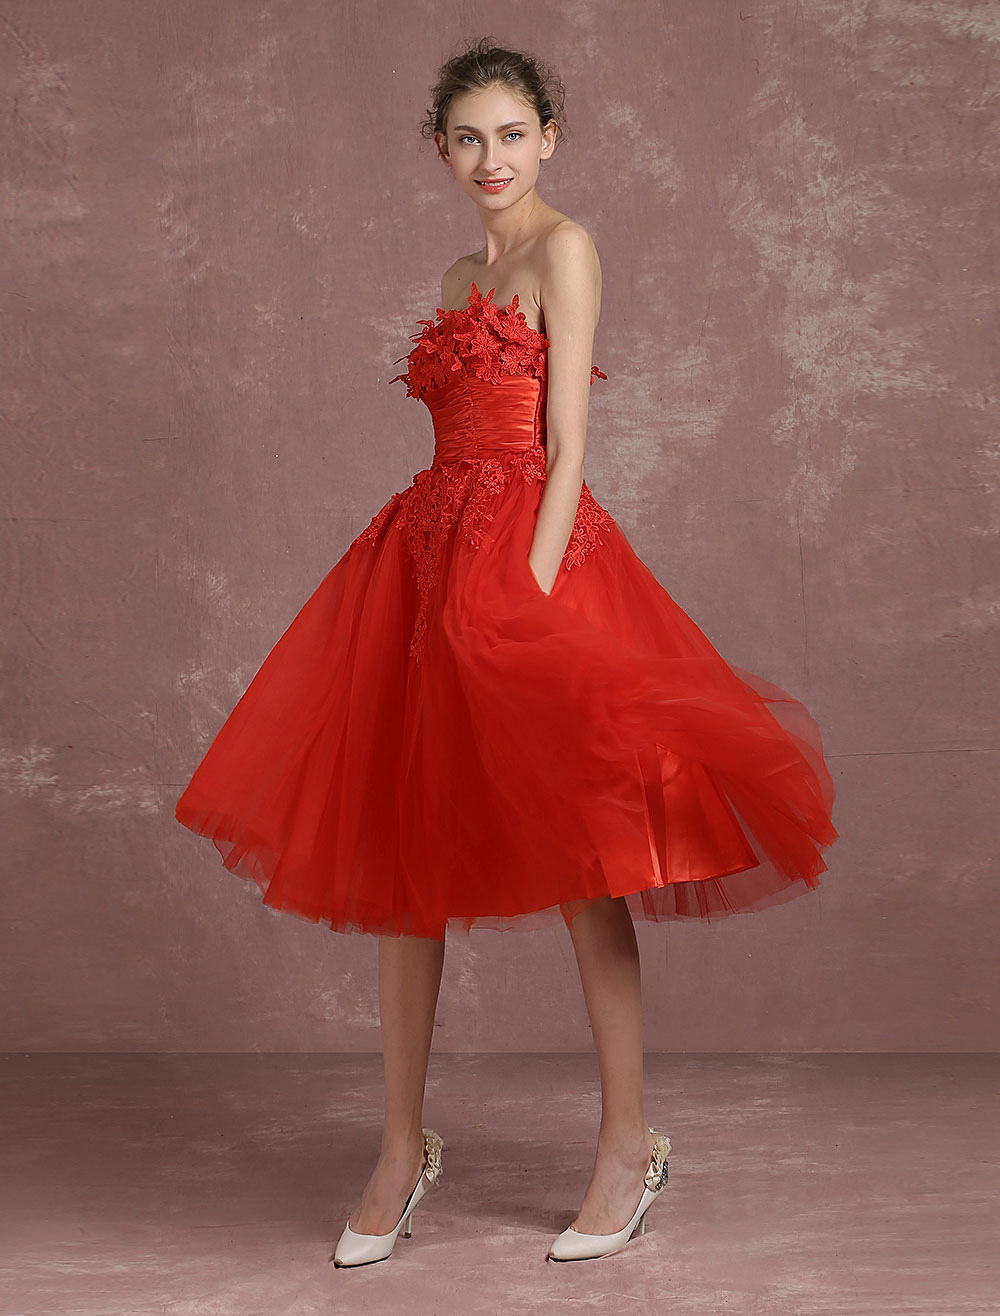 Boda Vestidos de Fiesta | Vestido moderno de cóctel rojo con escote palabra de honor sin mangas de encaje - PU16635